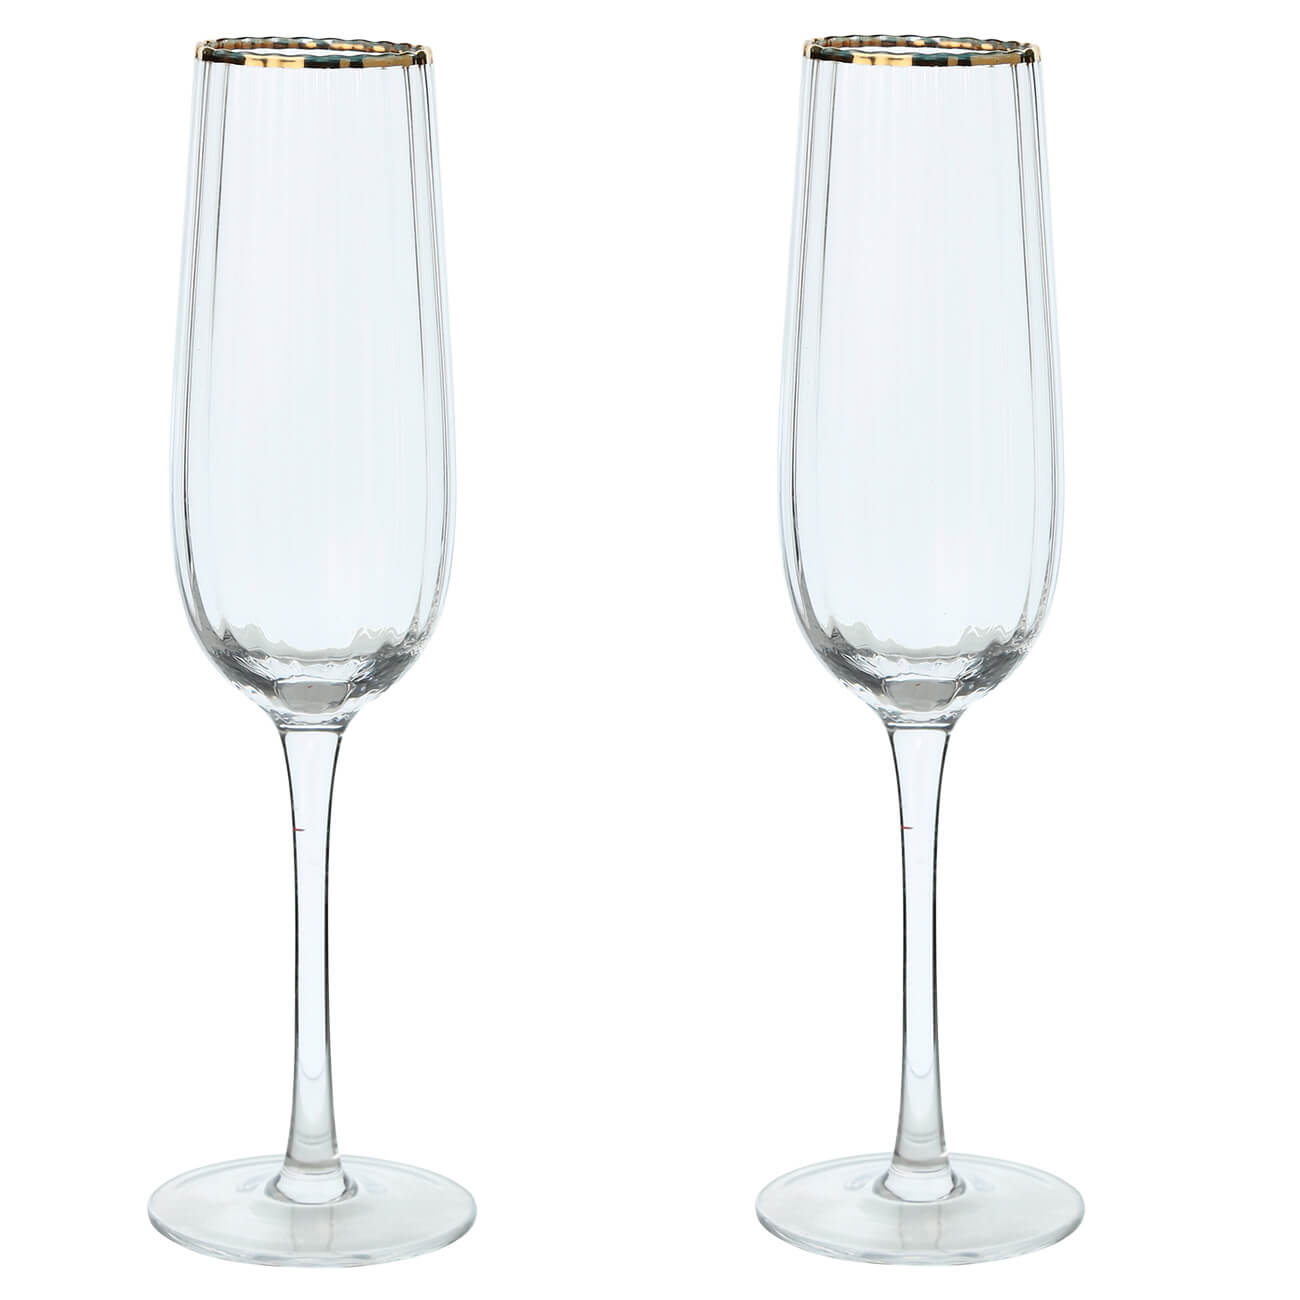 Бокал для шампанского, 275 мл, 2 шт, стекло, с золотистым кантом, Lombardy R Gold бокал для вина 530 мл 2 шт стекло с золотистым кантом lombardy r gold